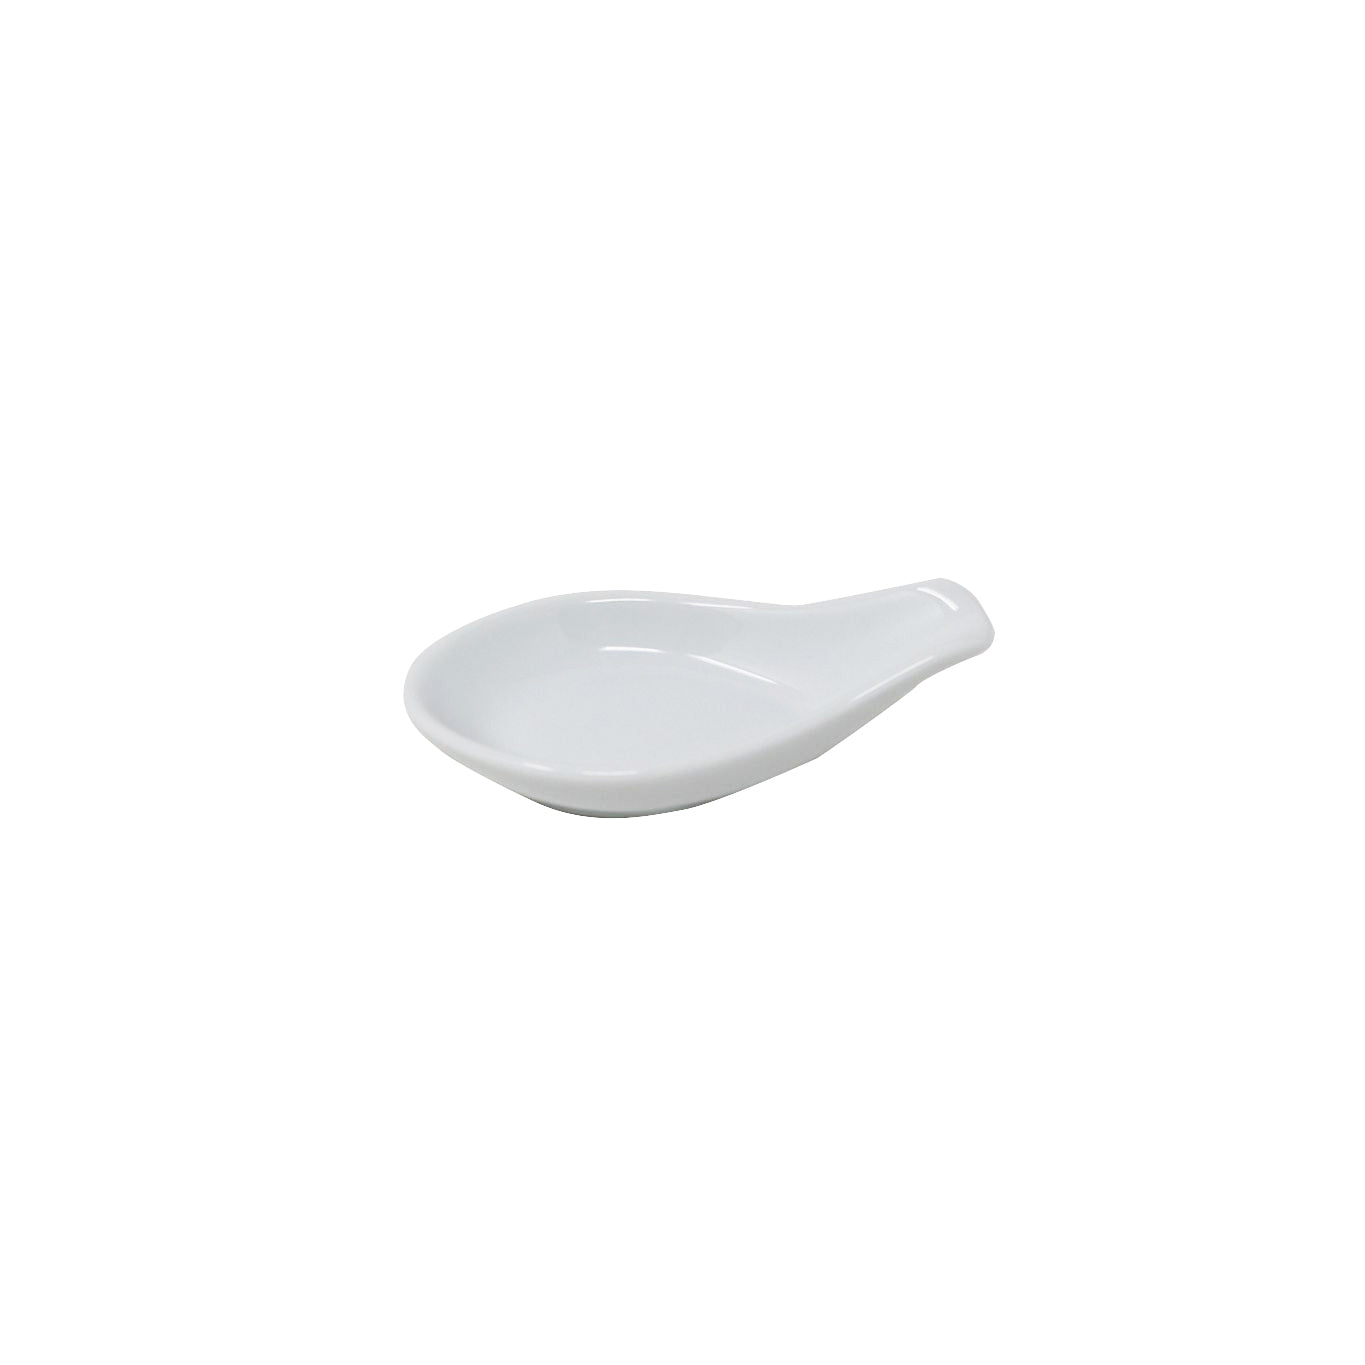 Noritake Lifestyle White Rice Spoon Rest